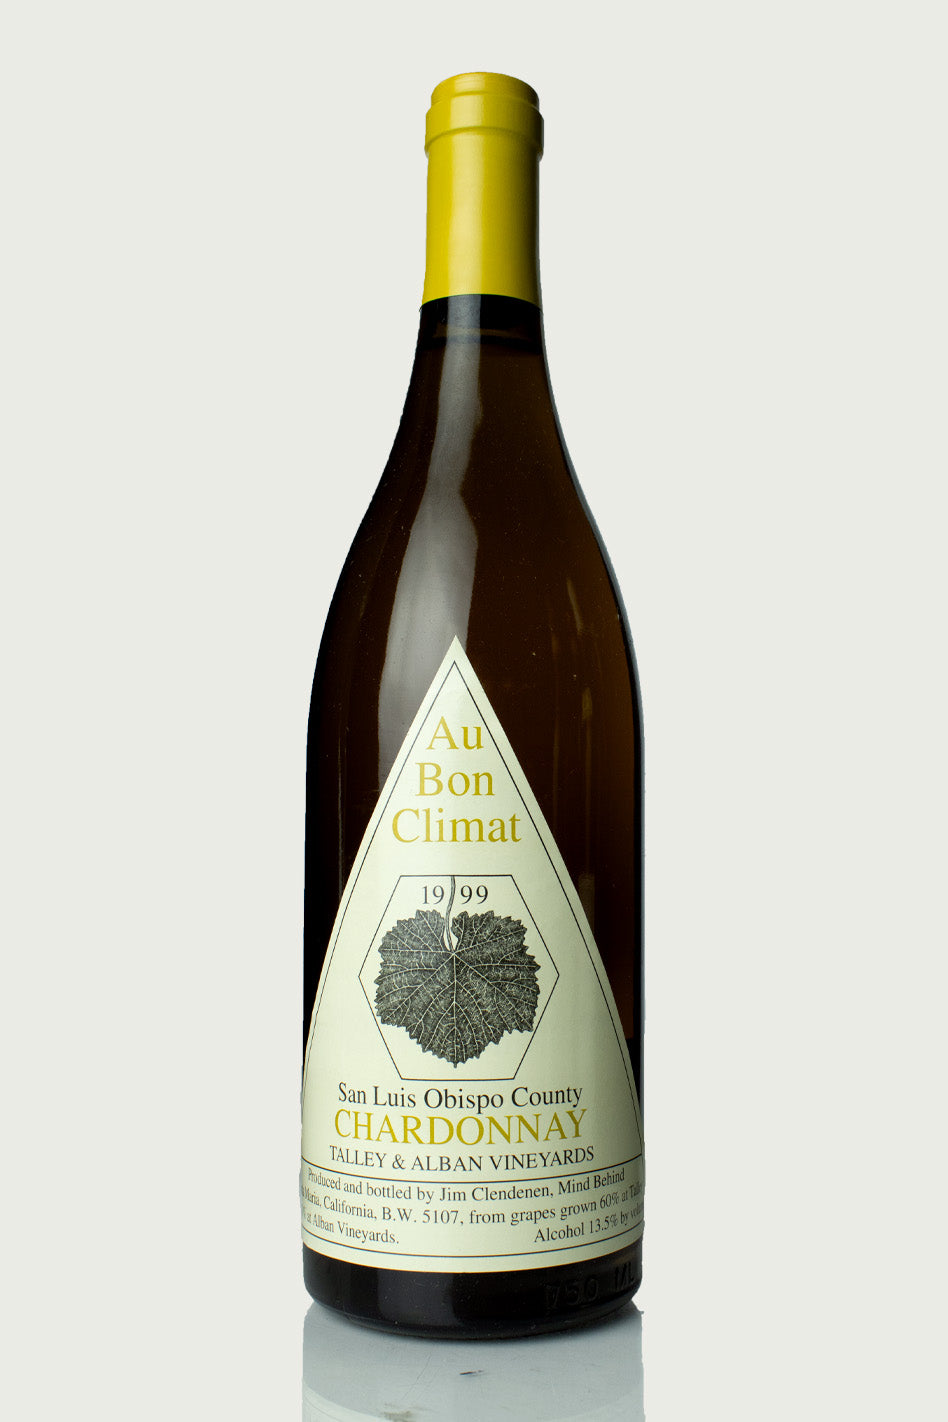 Au Bon Climat 'Talley & Alban' Chardonnay 1999